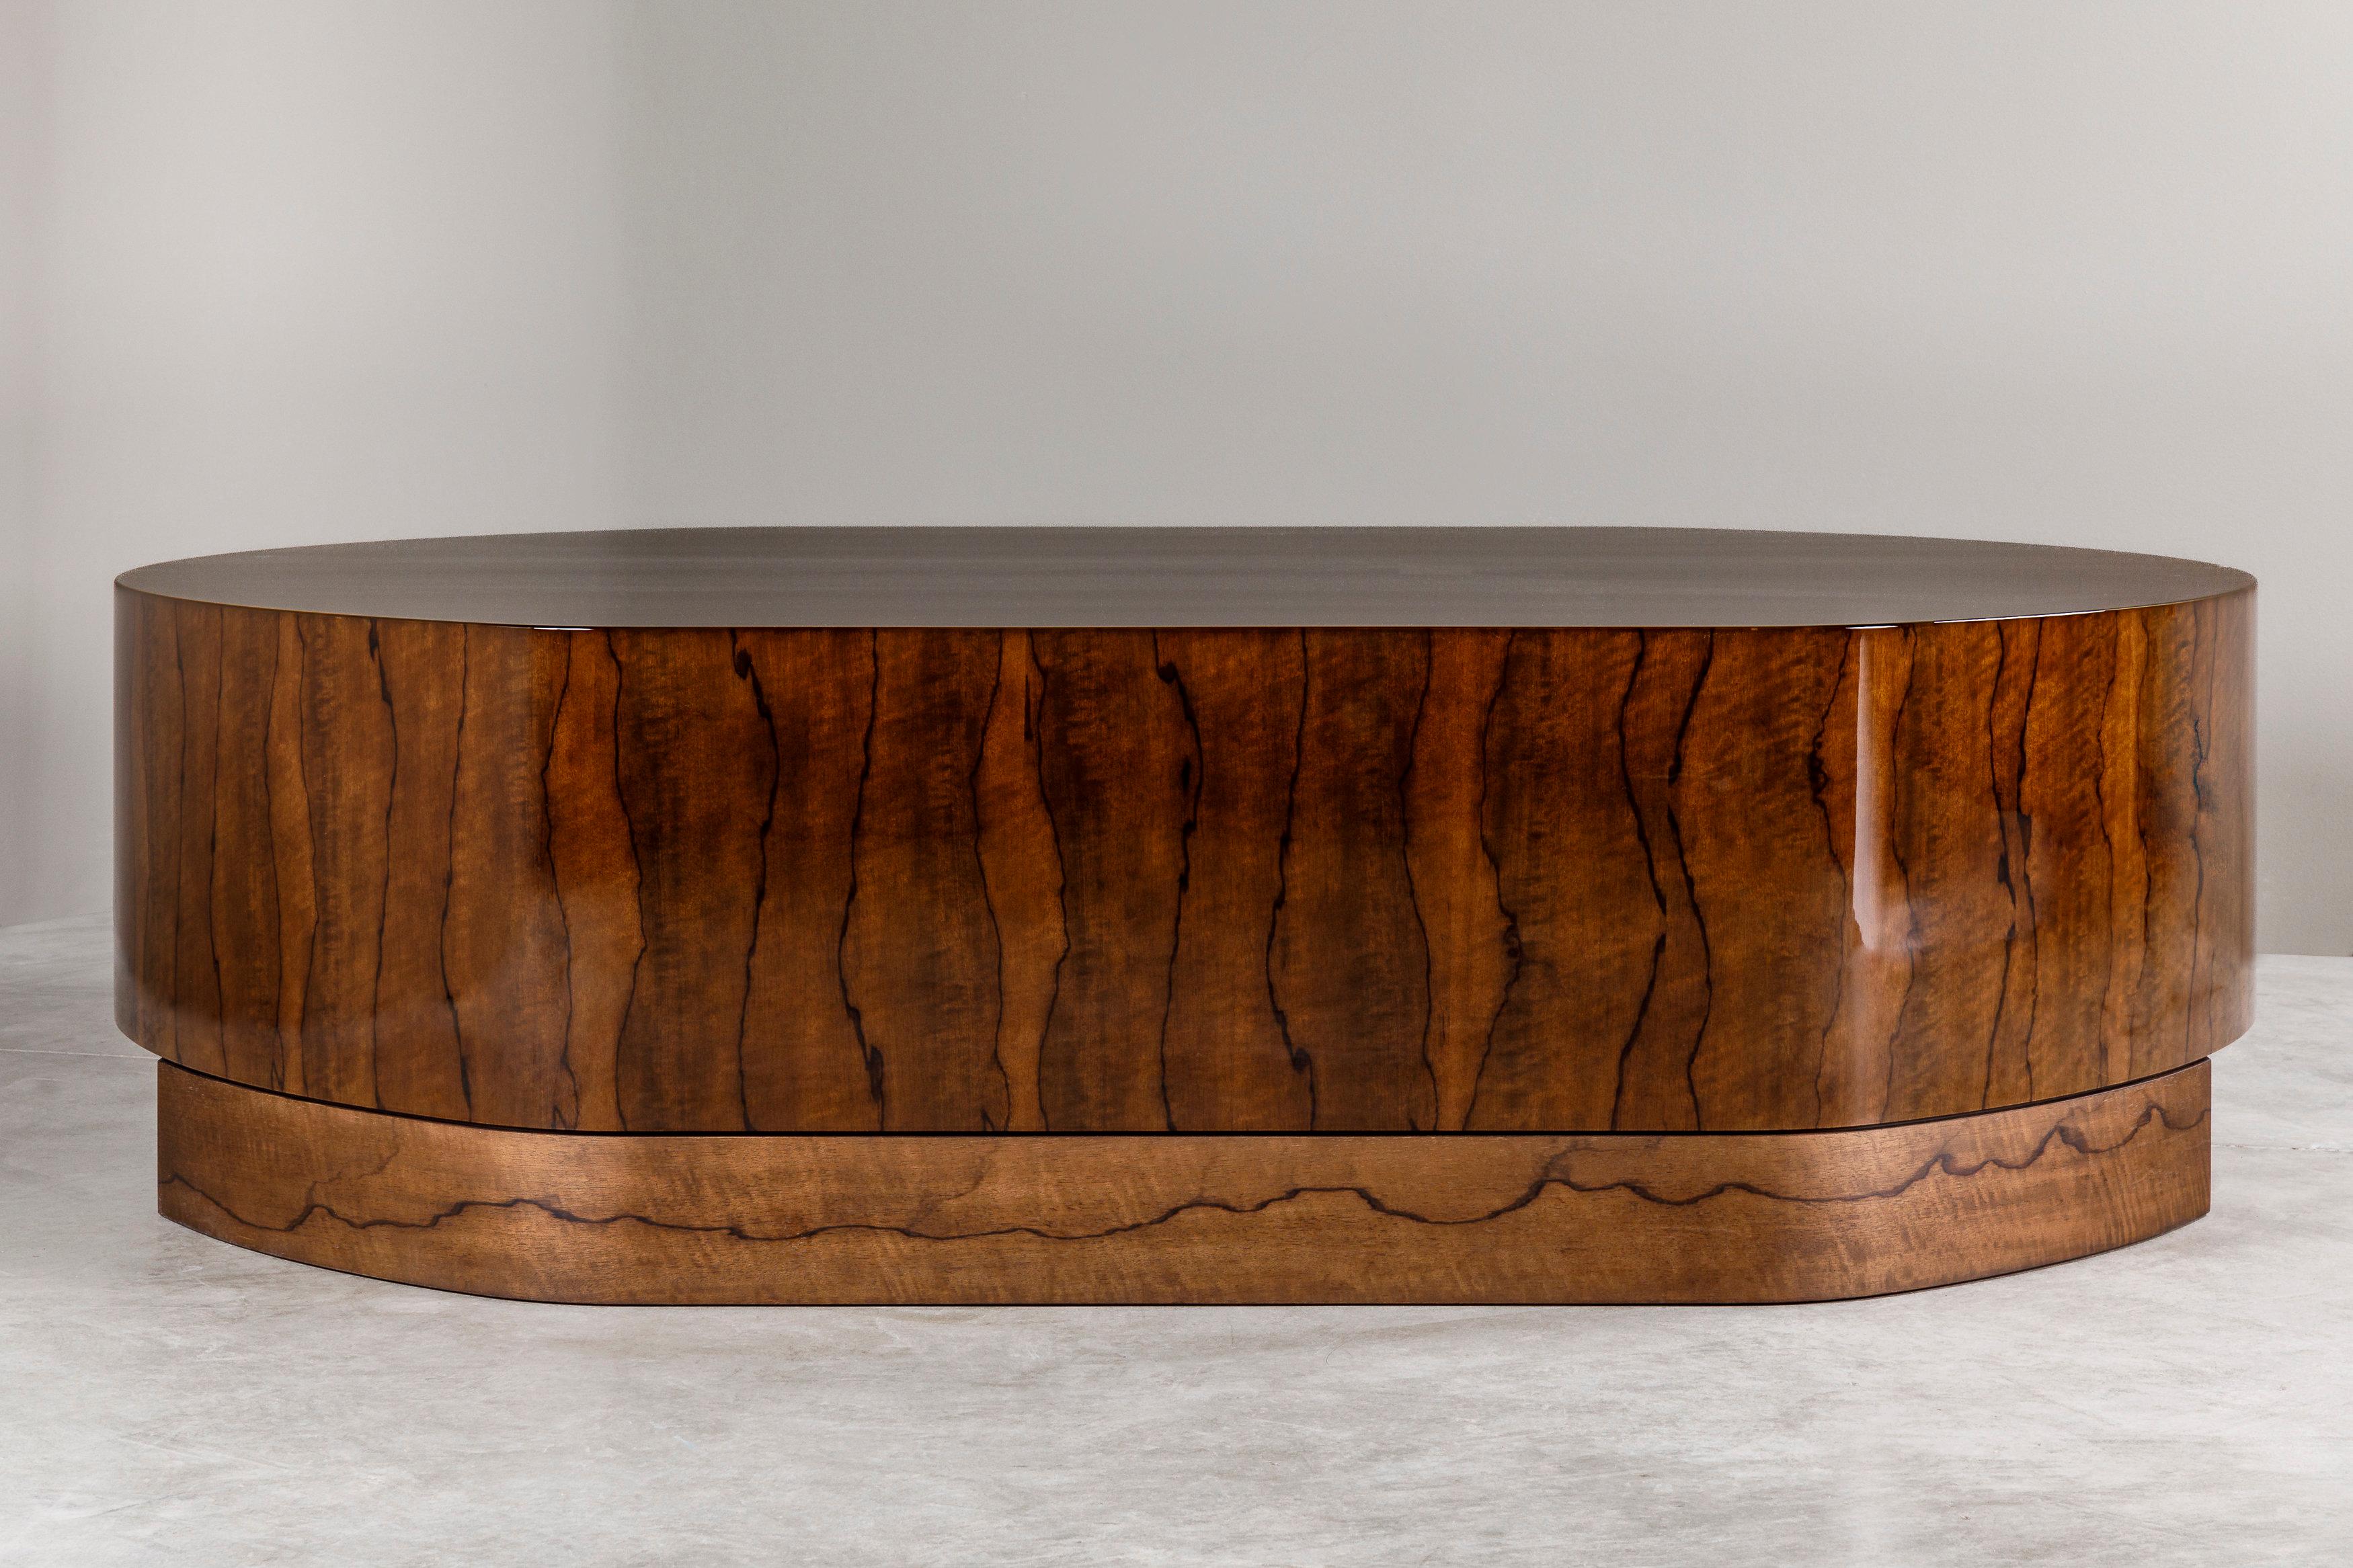 Der 2023 vom Atelier Linné entworfene ECU-Couchtisch ist aus dem afrikanischen Holz Limba Superba gefertigt, das an seinen dunklen Maserungen auf blondem Grund erkennbar ist. Der Tisch hat eine längliche Form und ruht auf einem eingelassenen